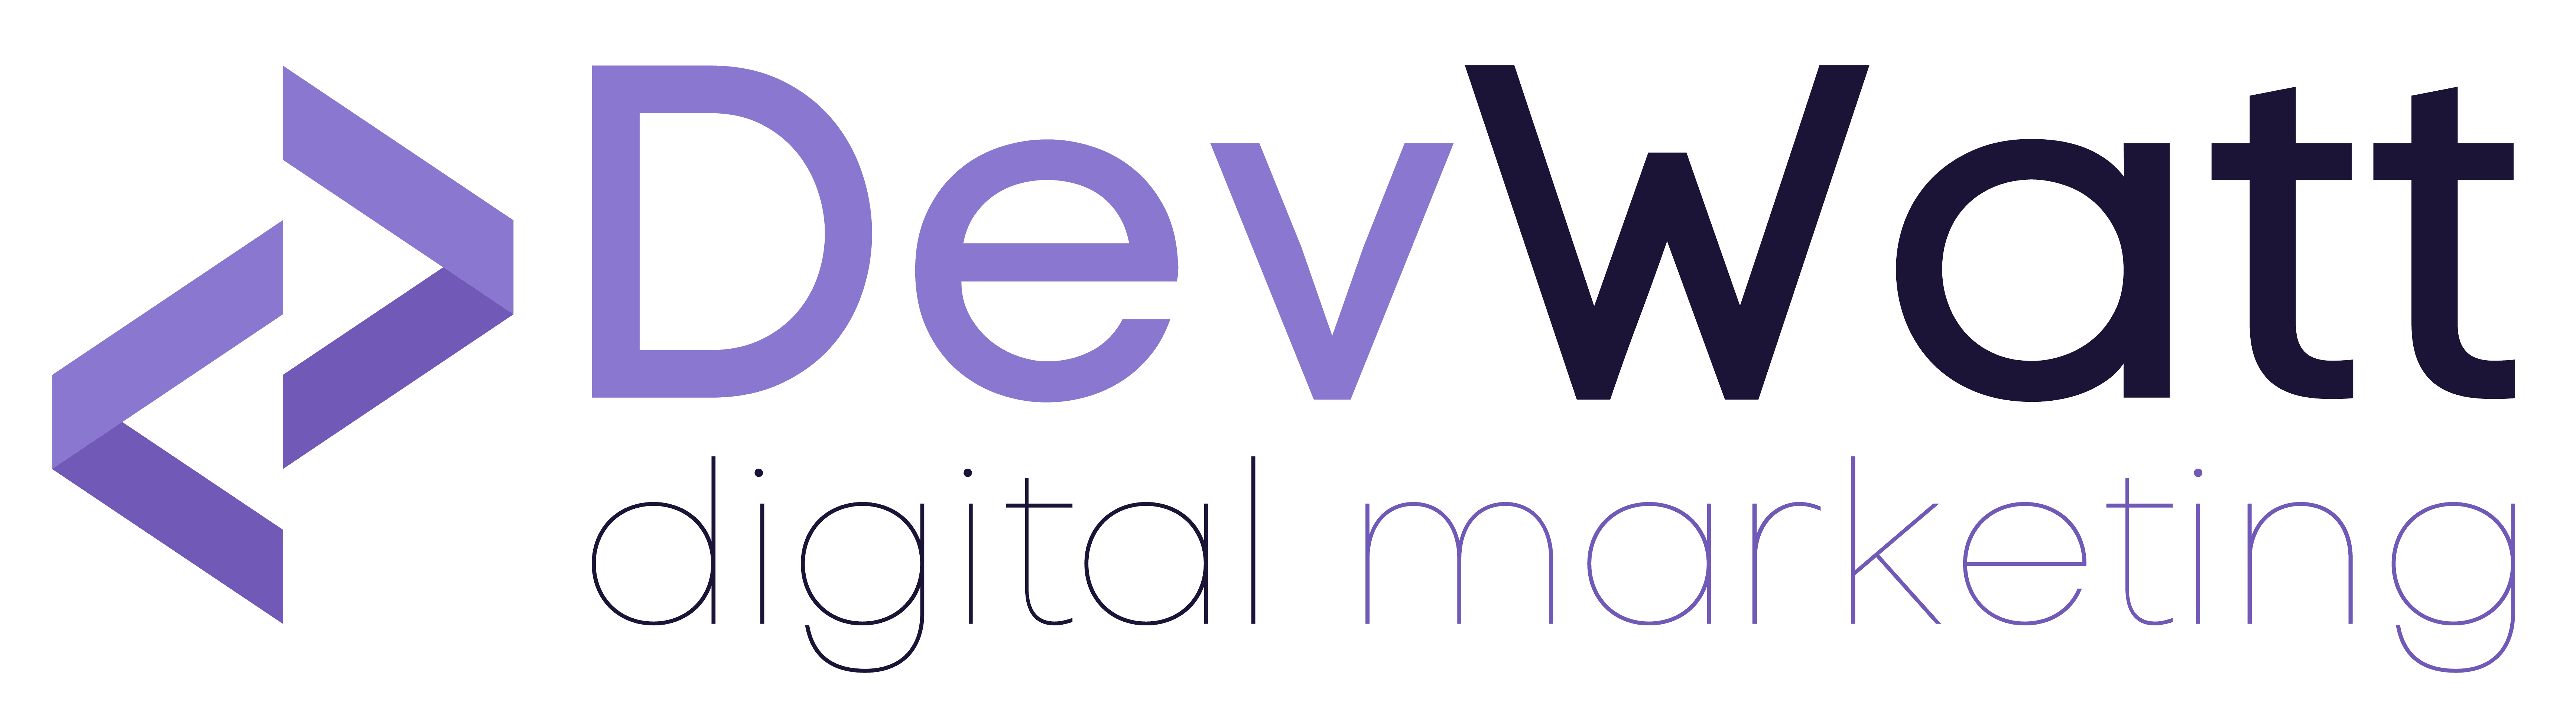 DevWatt Digital Marketing Logo